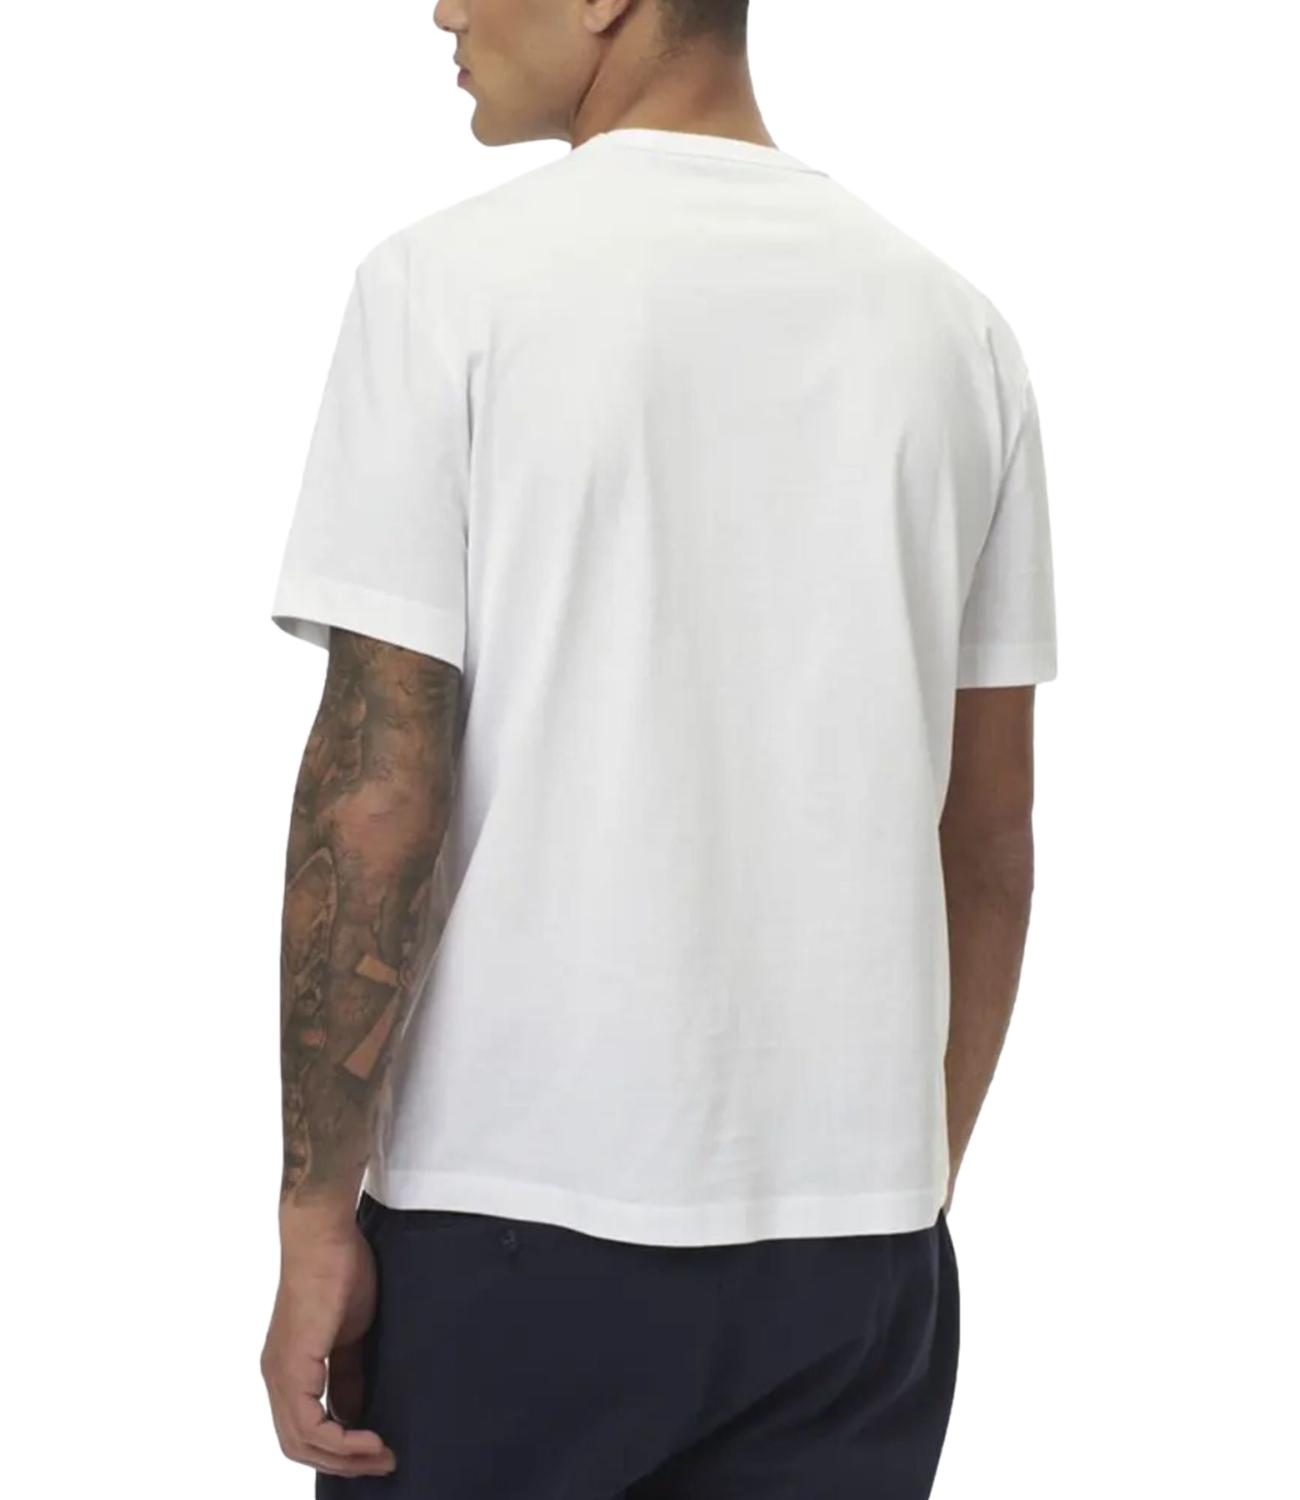 Blauer t-shirt bianco uomo con logo piccolo